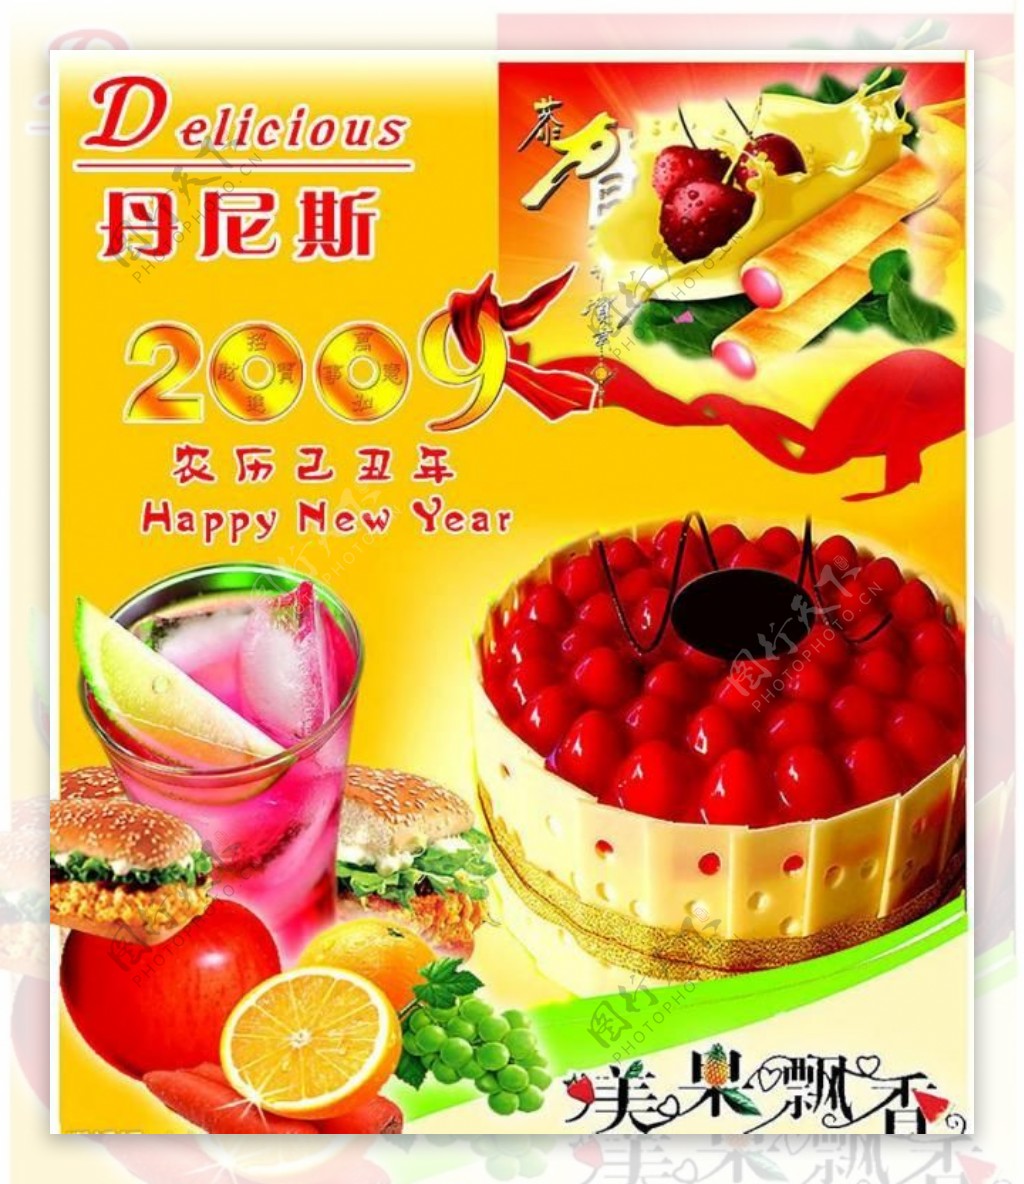 丹尼斯食品配料公司囝册封面图片